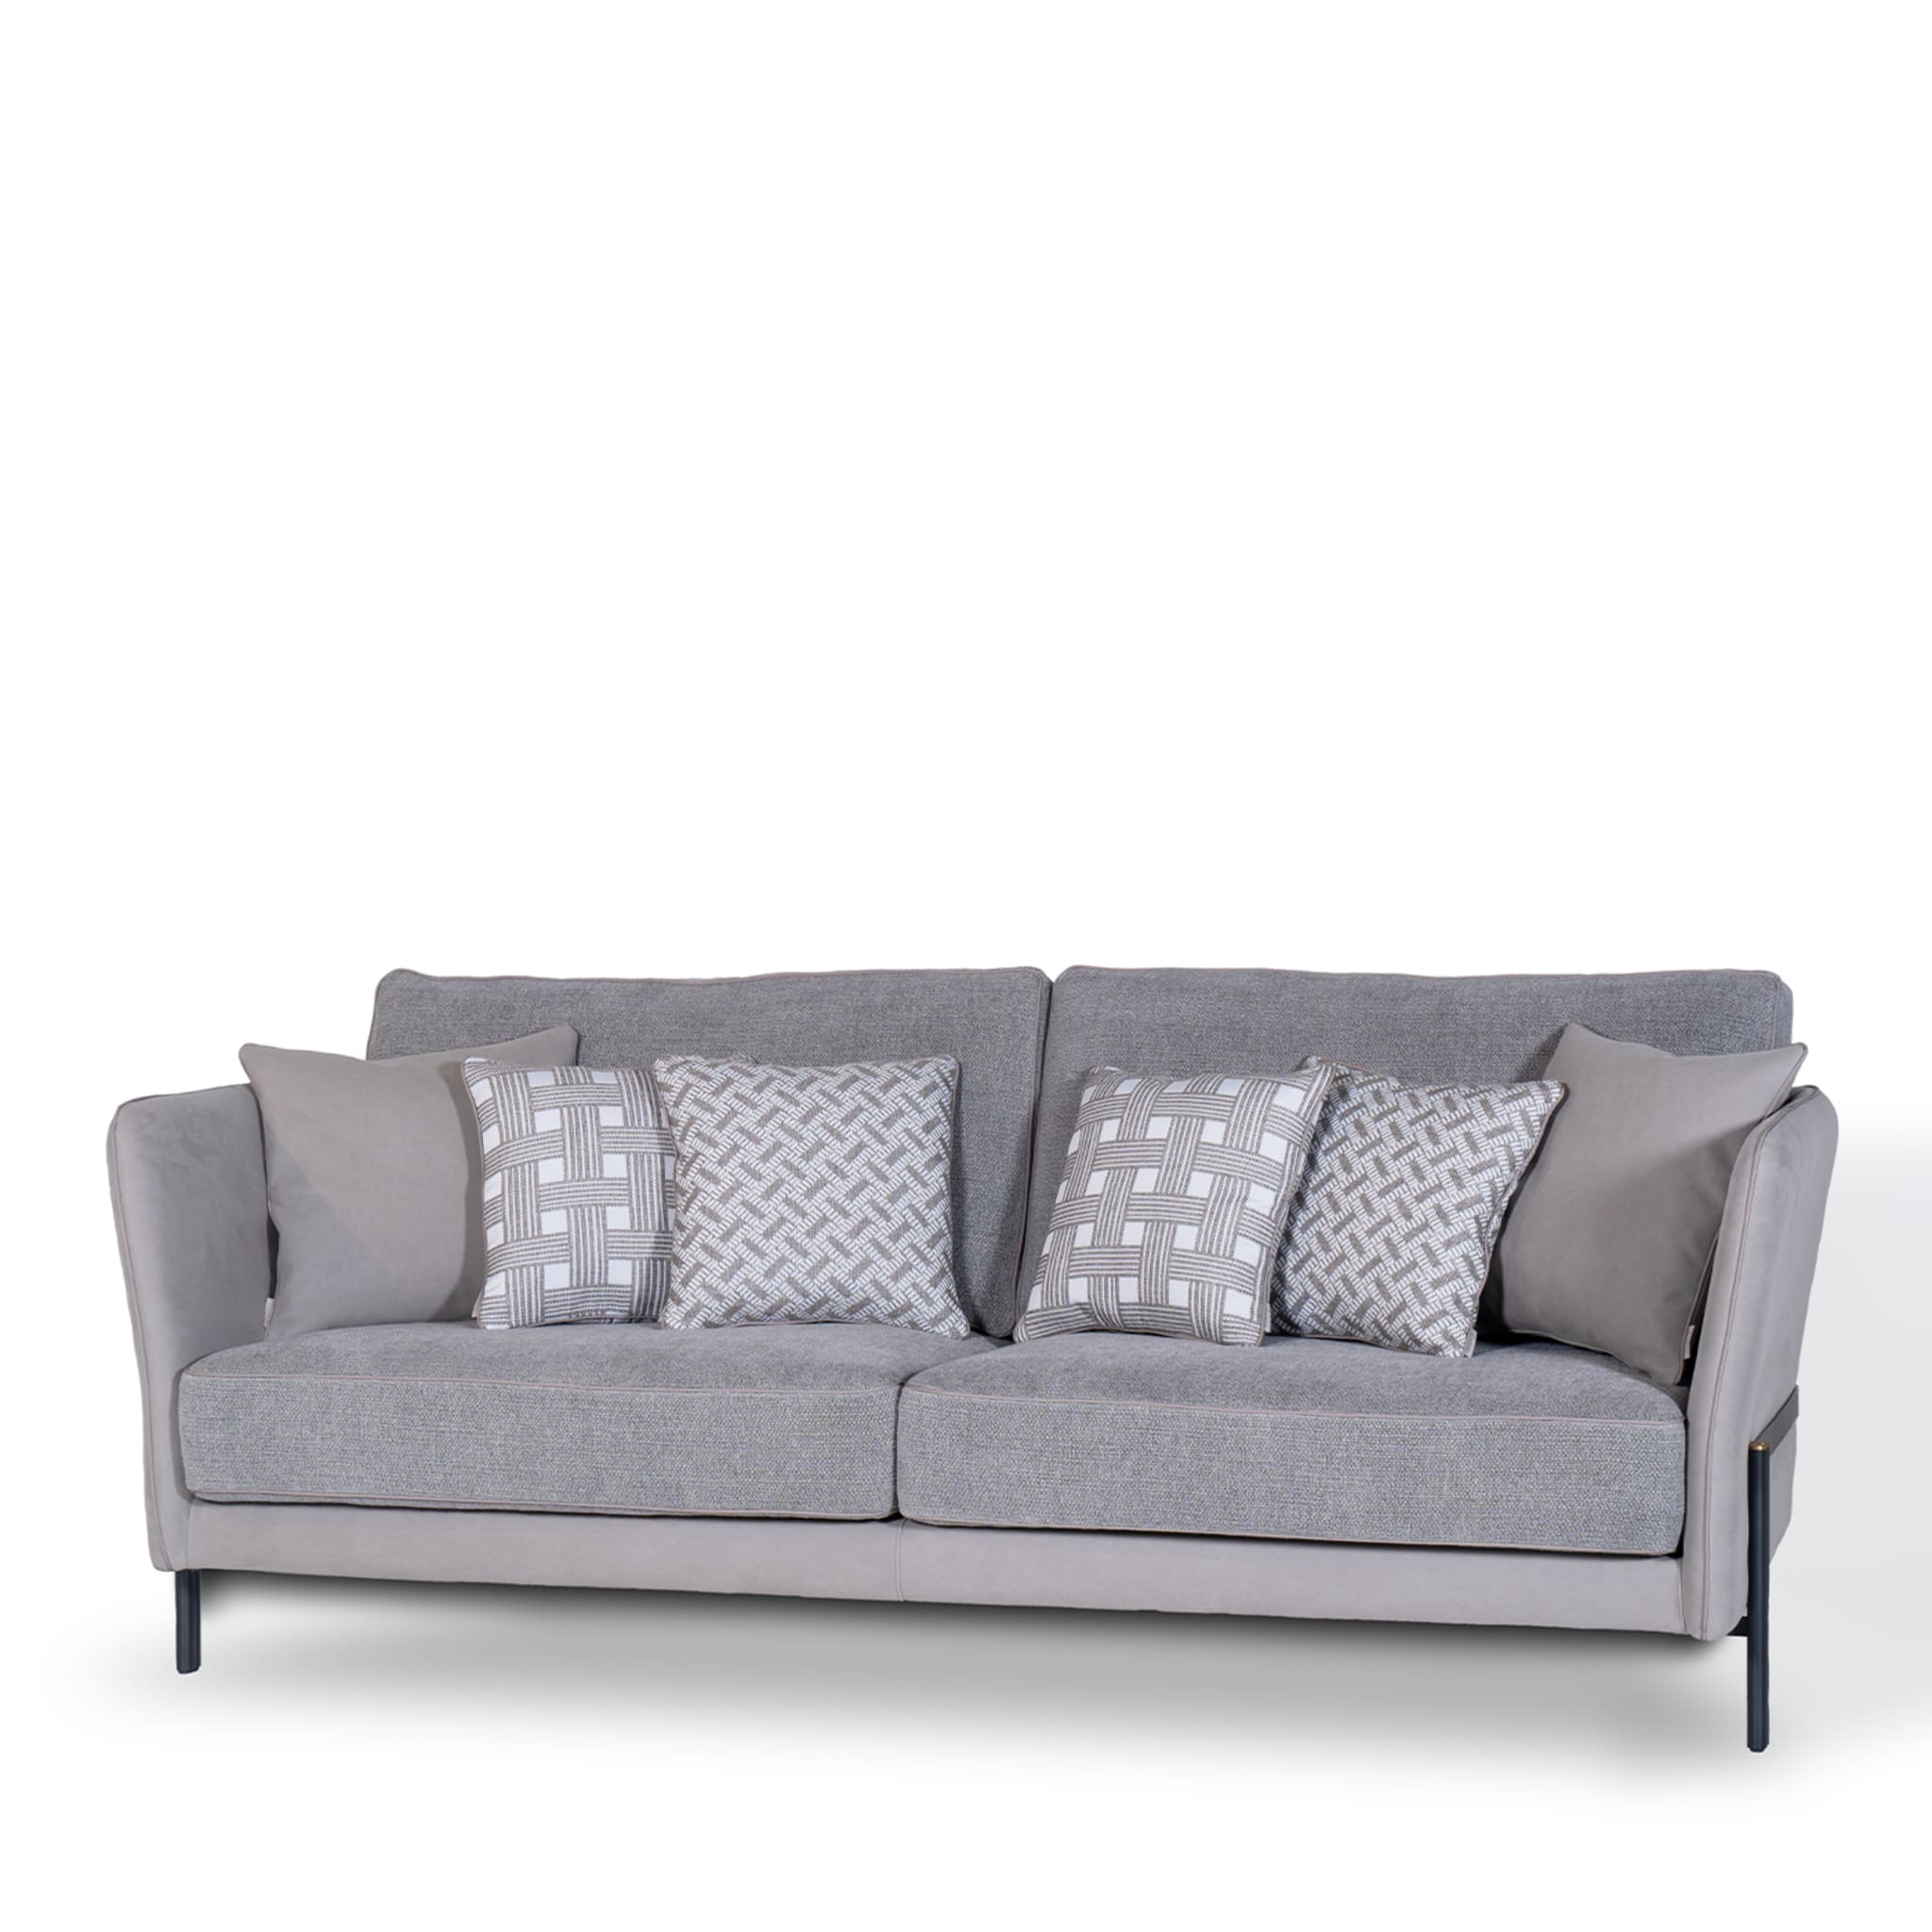 Universal Gray Sofa by Marco & Giulio Mantellassi  - Alternative view 4